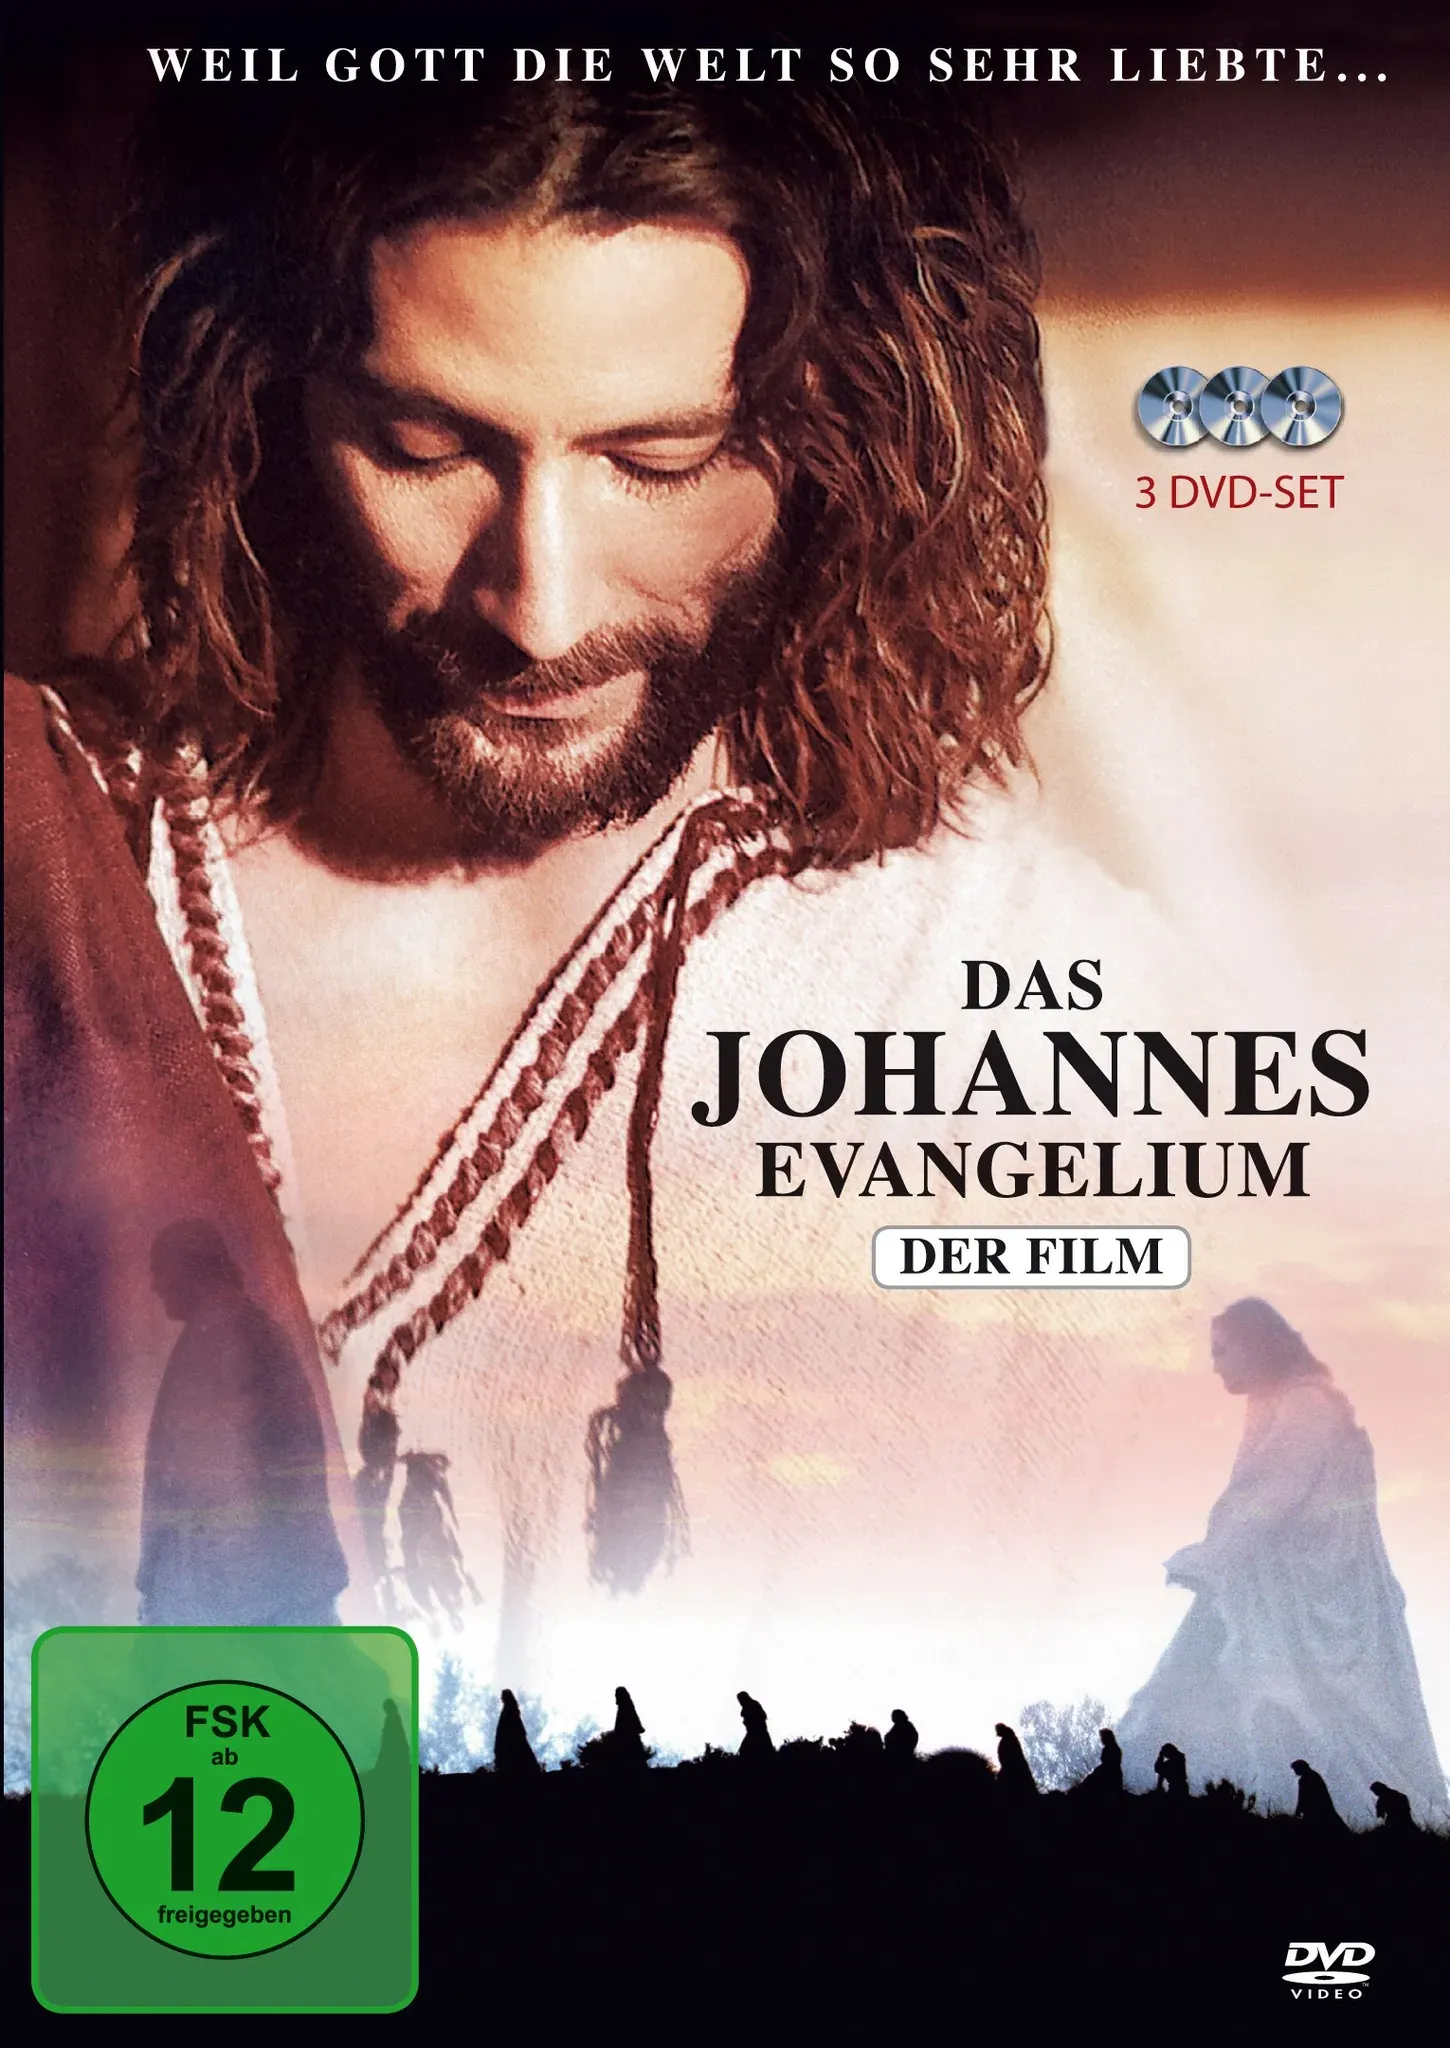 Das Johannes Evangelium - Der Film [3 DVDs] (Neu differenzbesteuert)